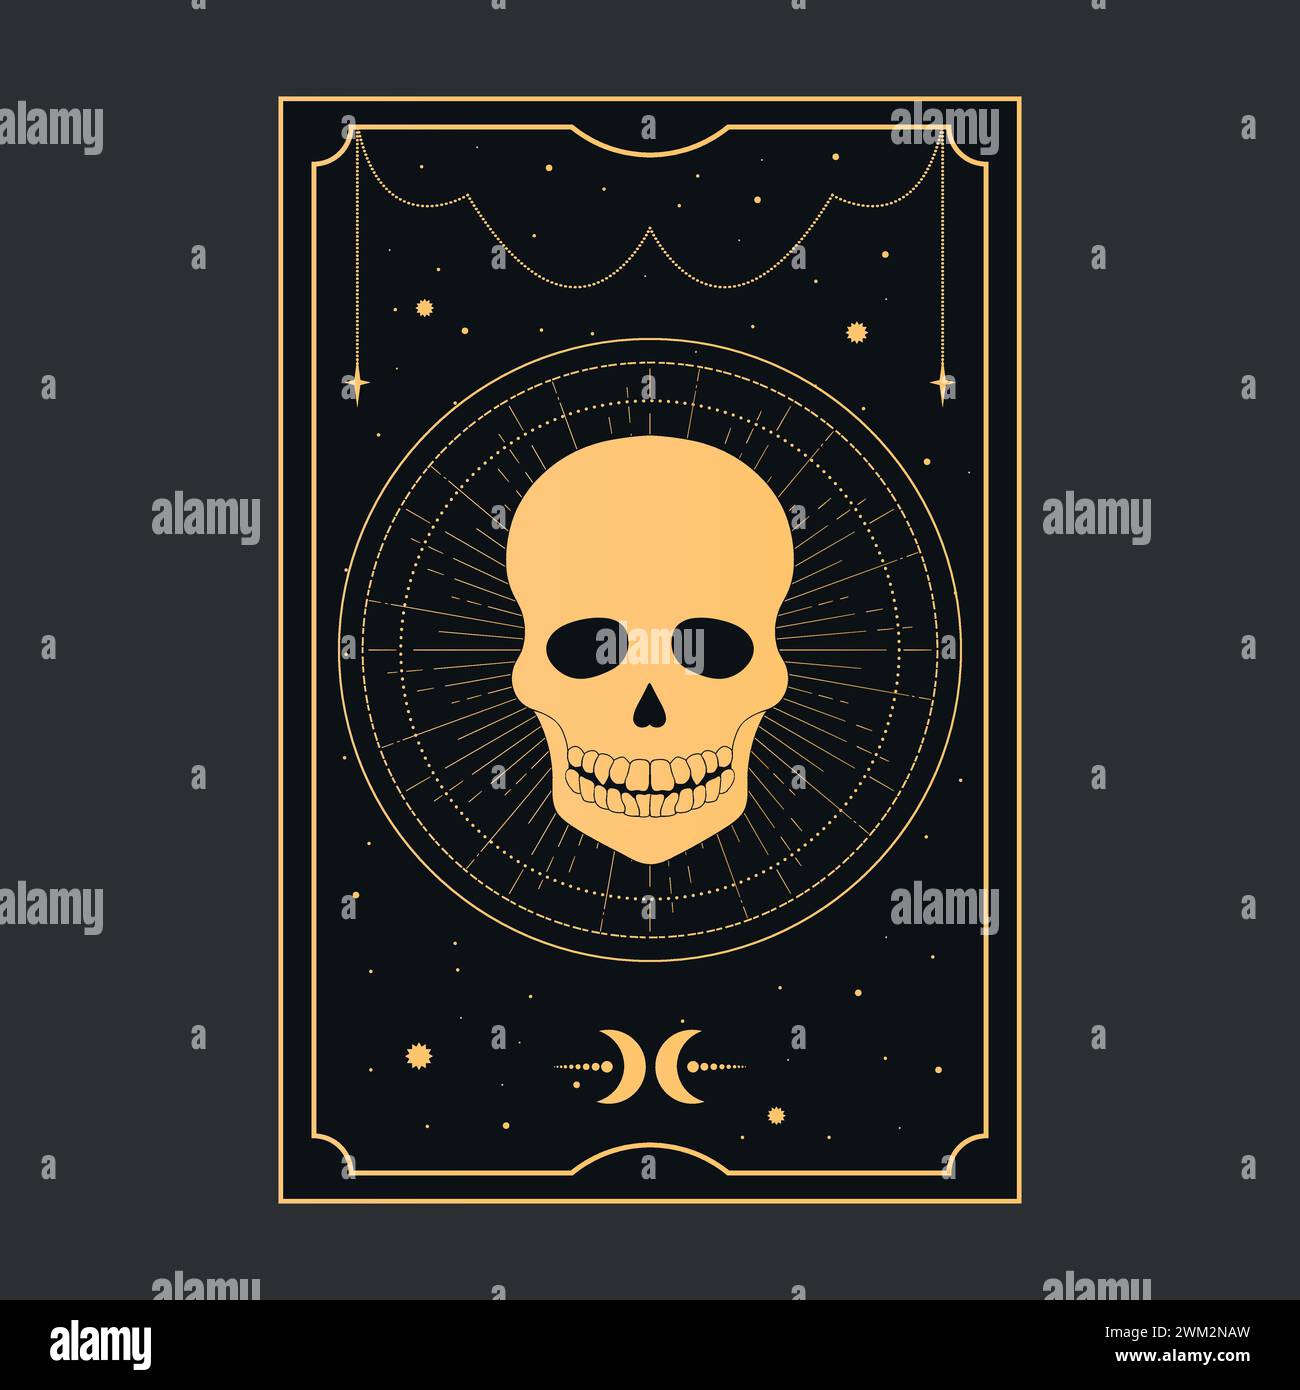 Goldene Tarotkarte mit einem Schädel, der den Tod symbolisiert. Tarot-Symbolismus. Rätsel, Astrologie, Esoterik. Vektorabbildung Stock Vektor